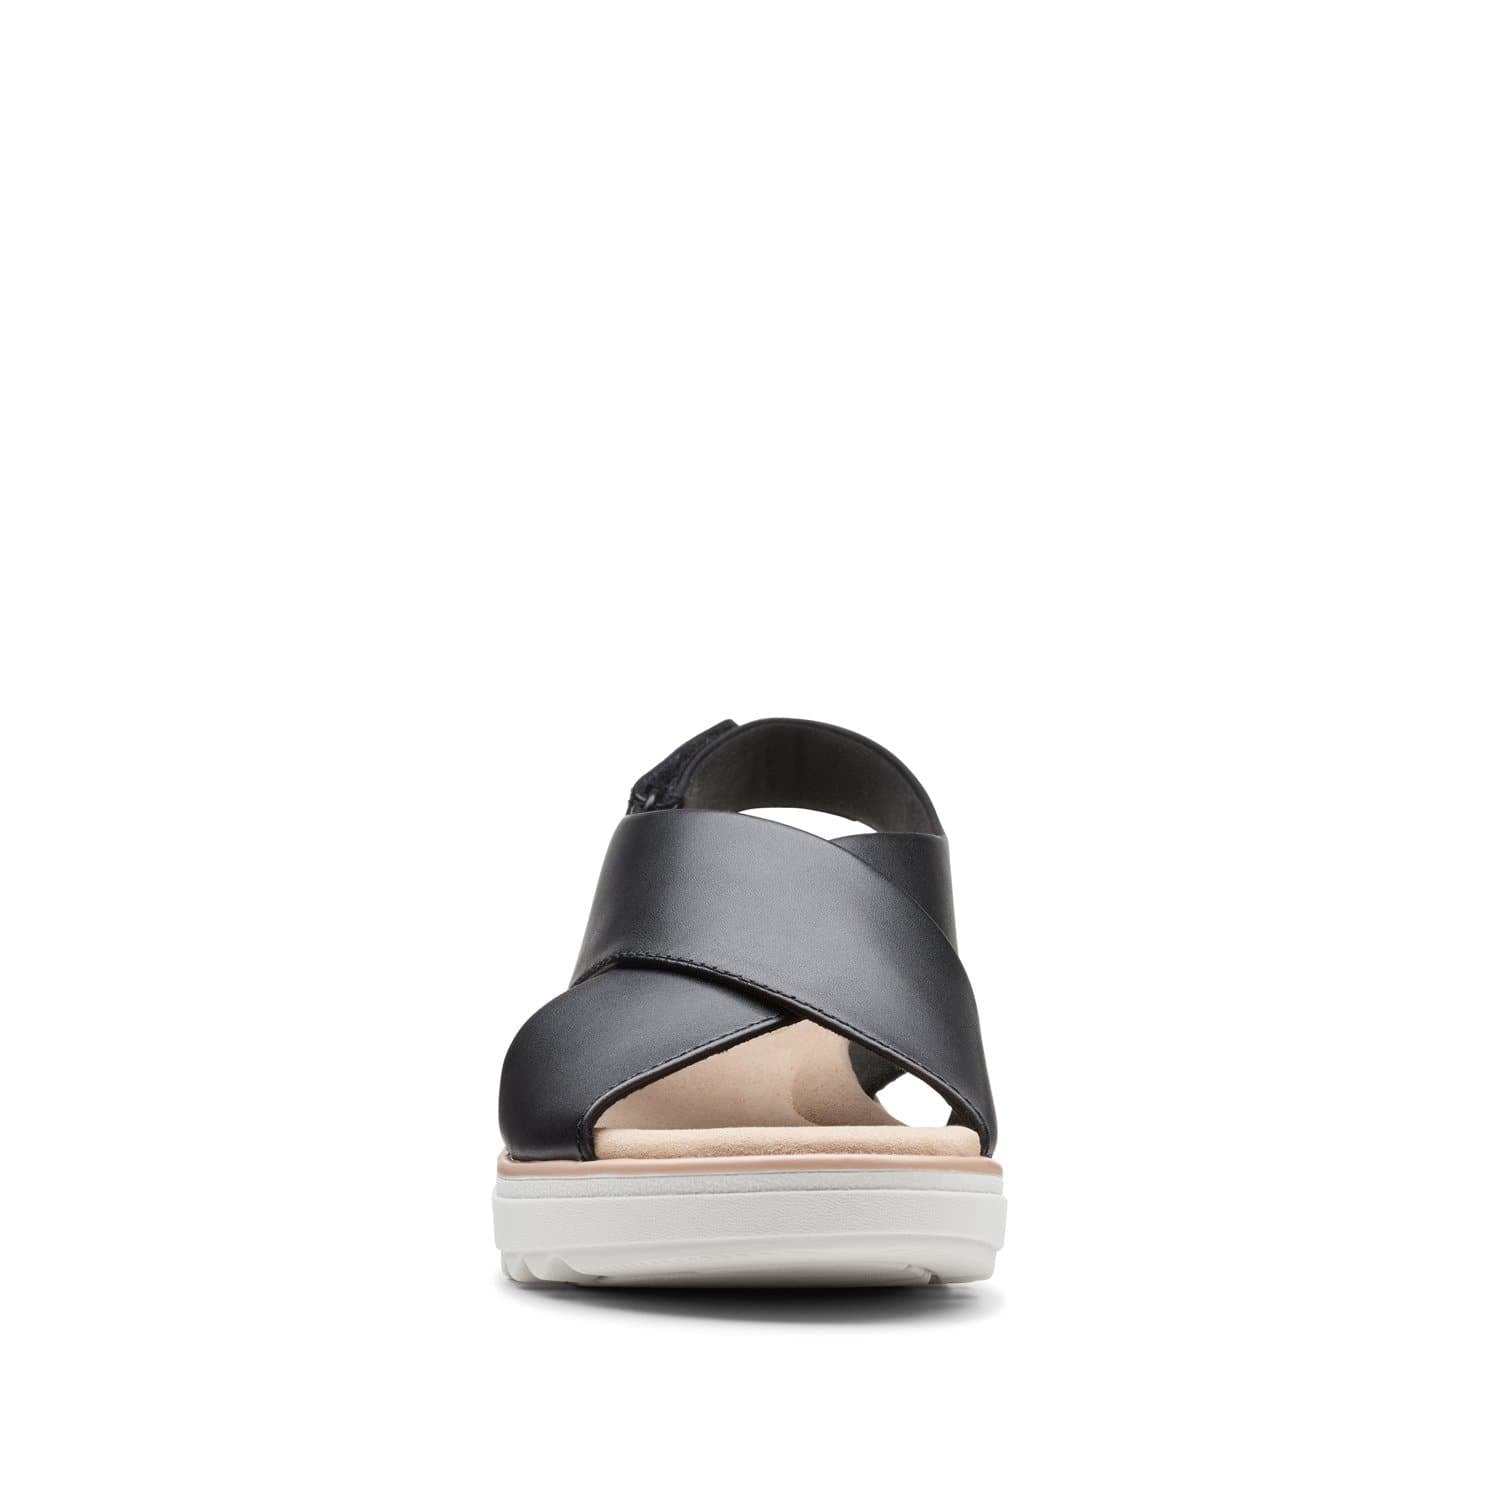 Clarks-Jillian-Jewel-Women's-Sandals-Black-Leather-26149741